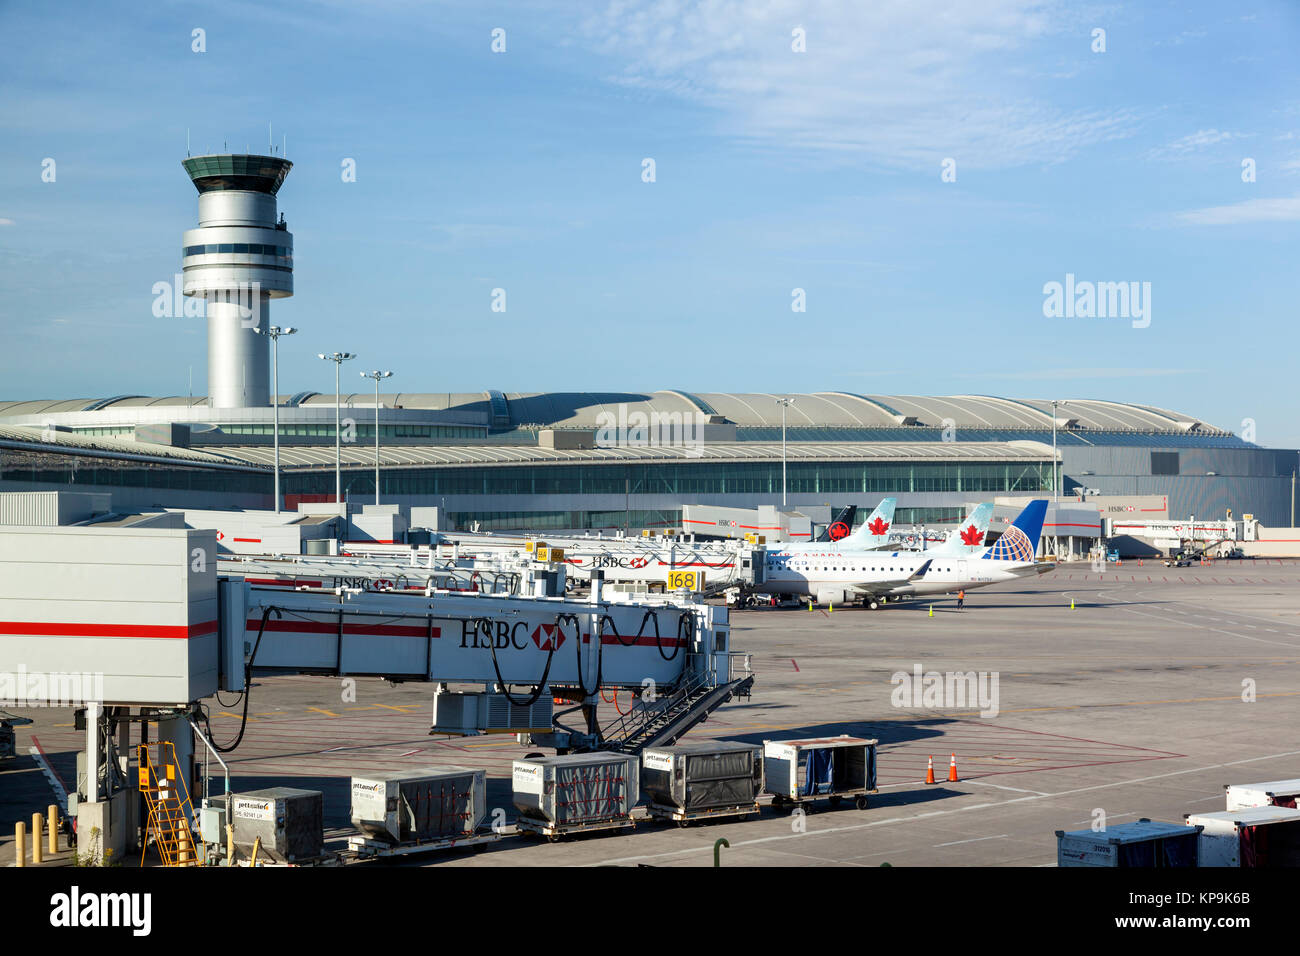 Toronto, Canada - Oct 22, 2017: Air Canada y el Rouge de aviones en el Aeropuerto Internacional Pearson de Toronto, Canadá Foto de stock